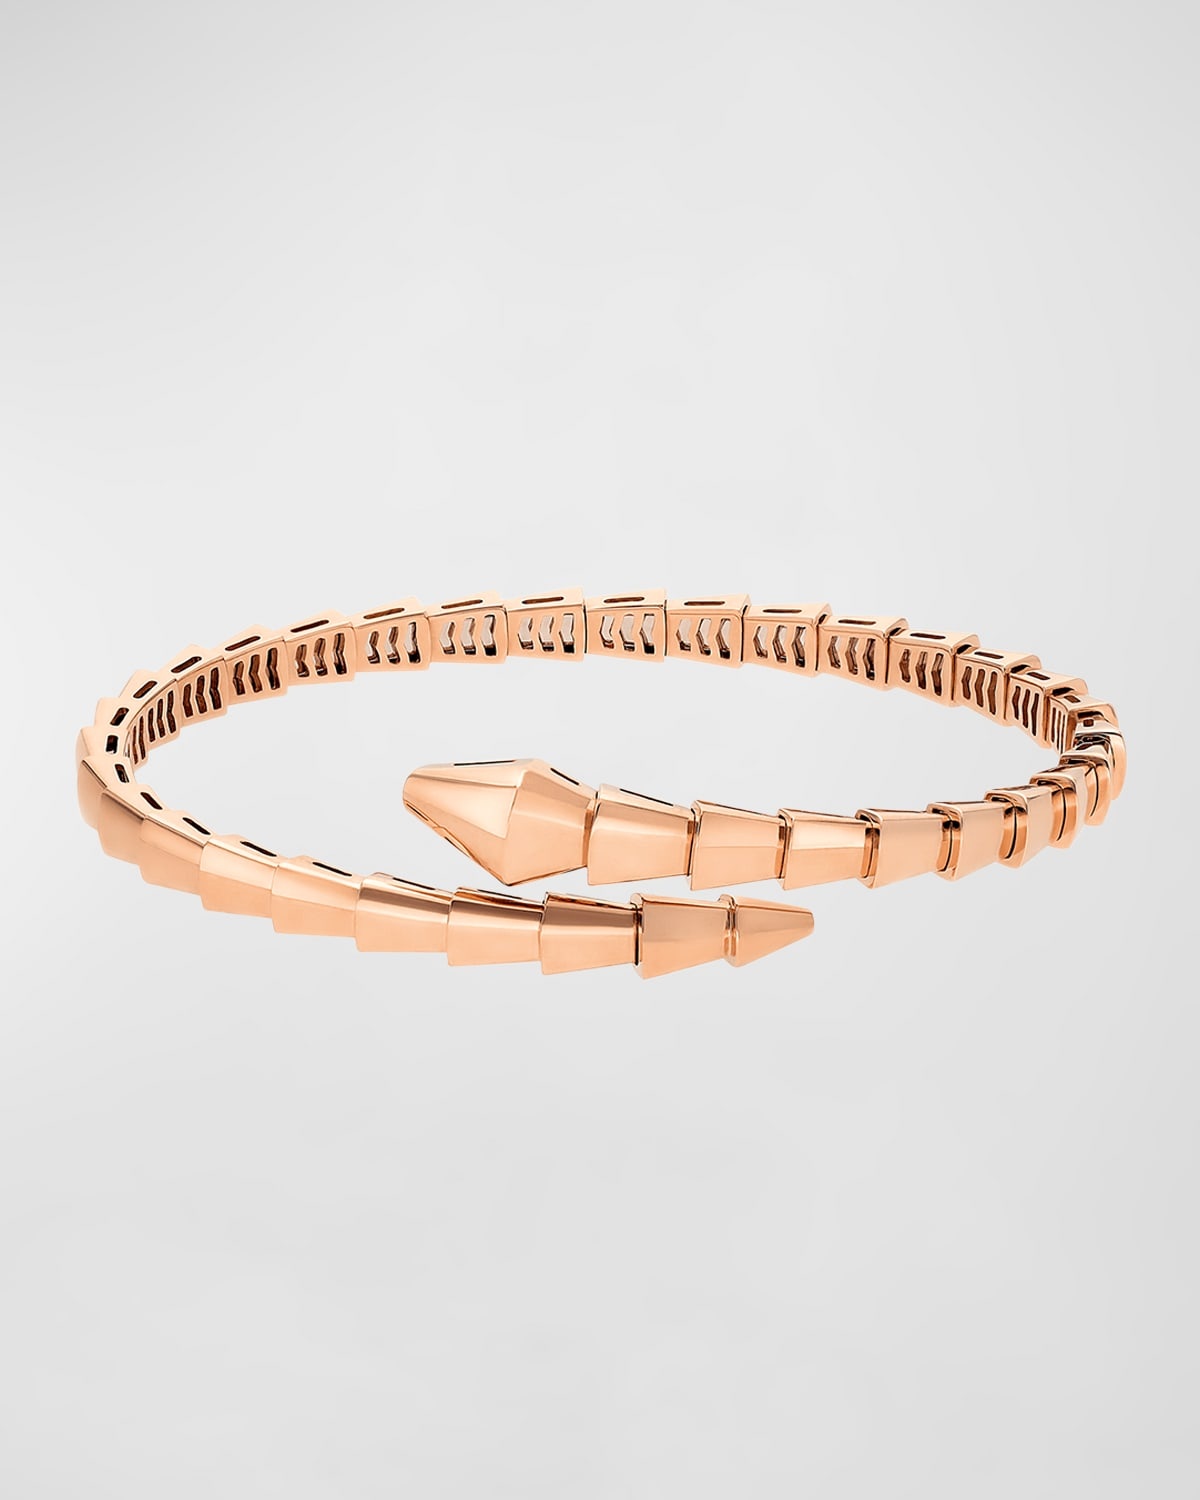 Serpenti Viper Rose Gold Bracelet, Size S - 3